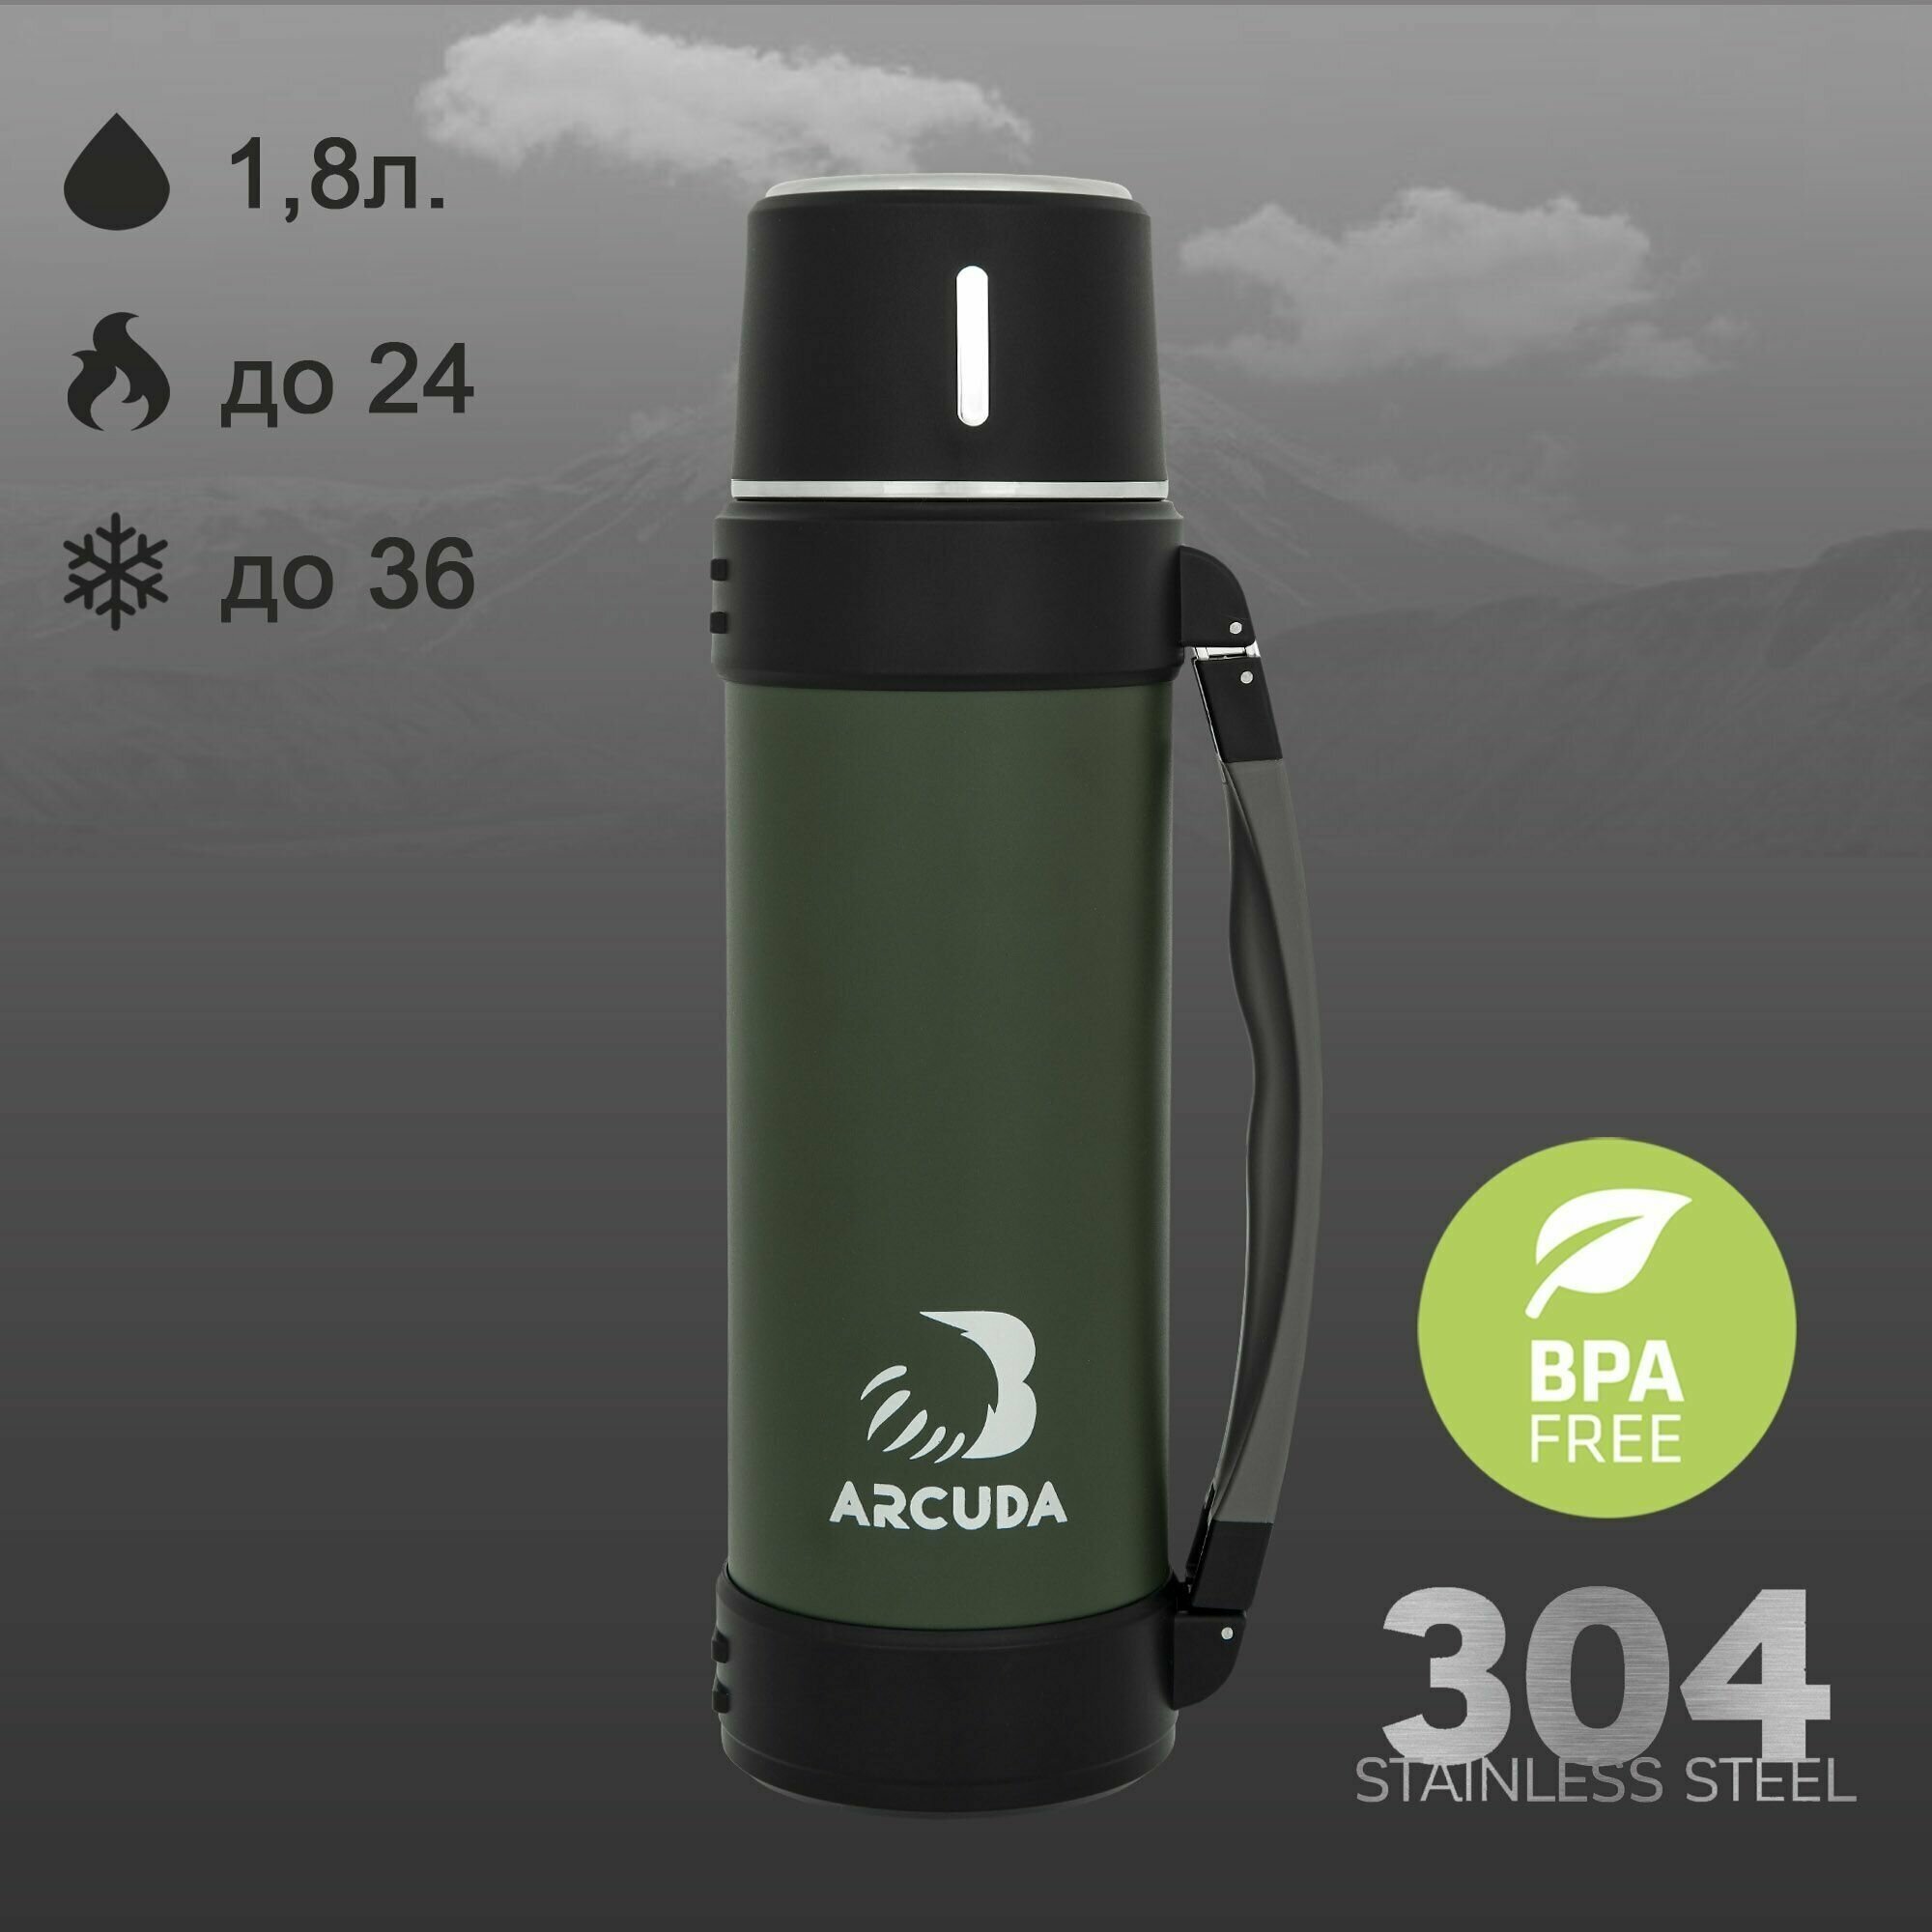 Термос вакуумный ARCUDA ARC-9002 Army seria, 1.8 литра, зеленый цвет